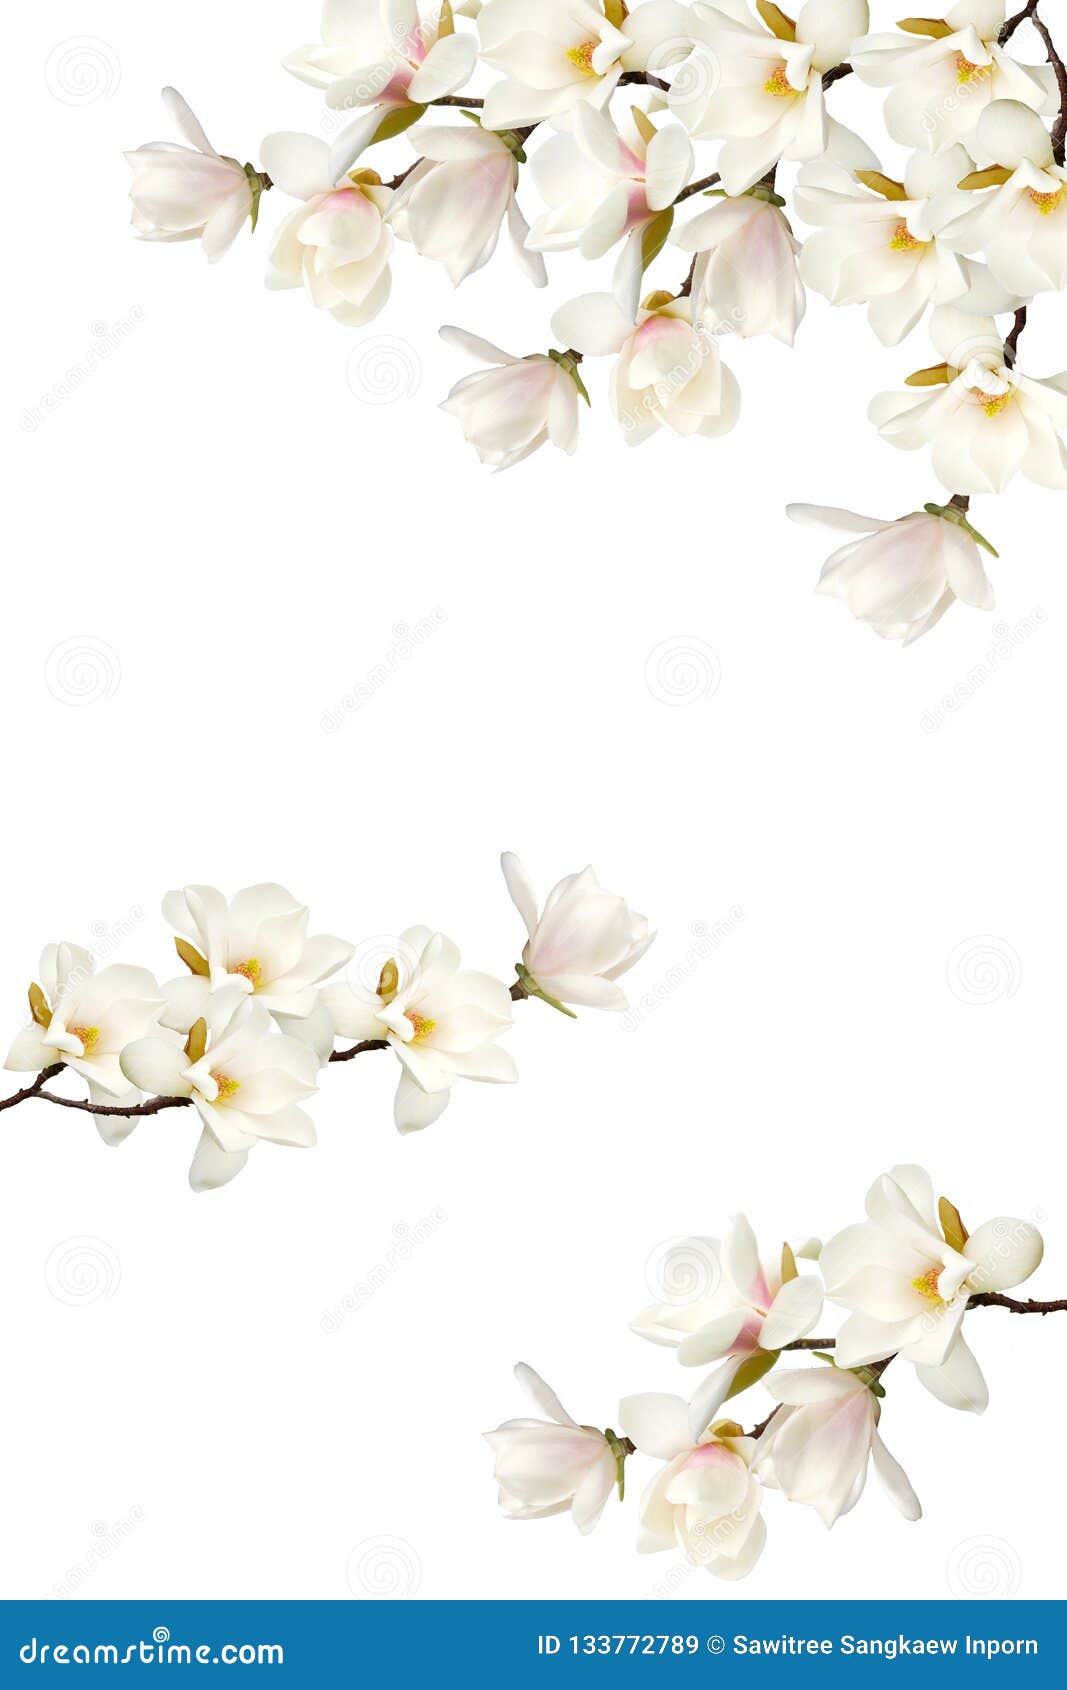 White Magnolia Flower Bouquet on White Background. Stock Image - Image ...